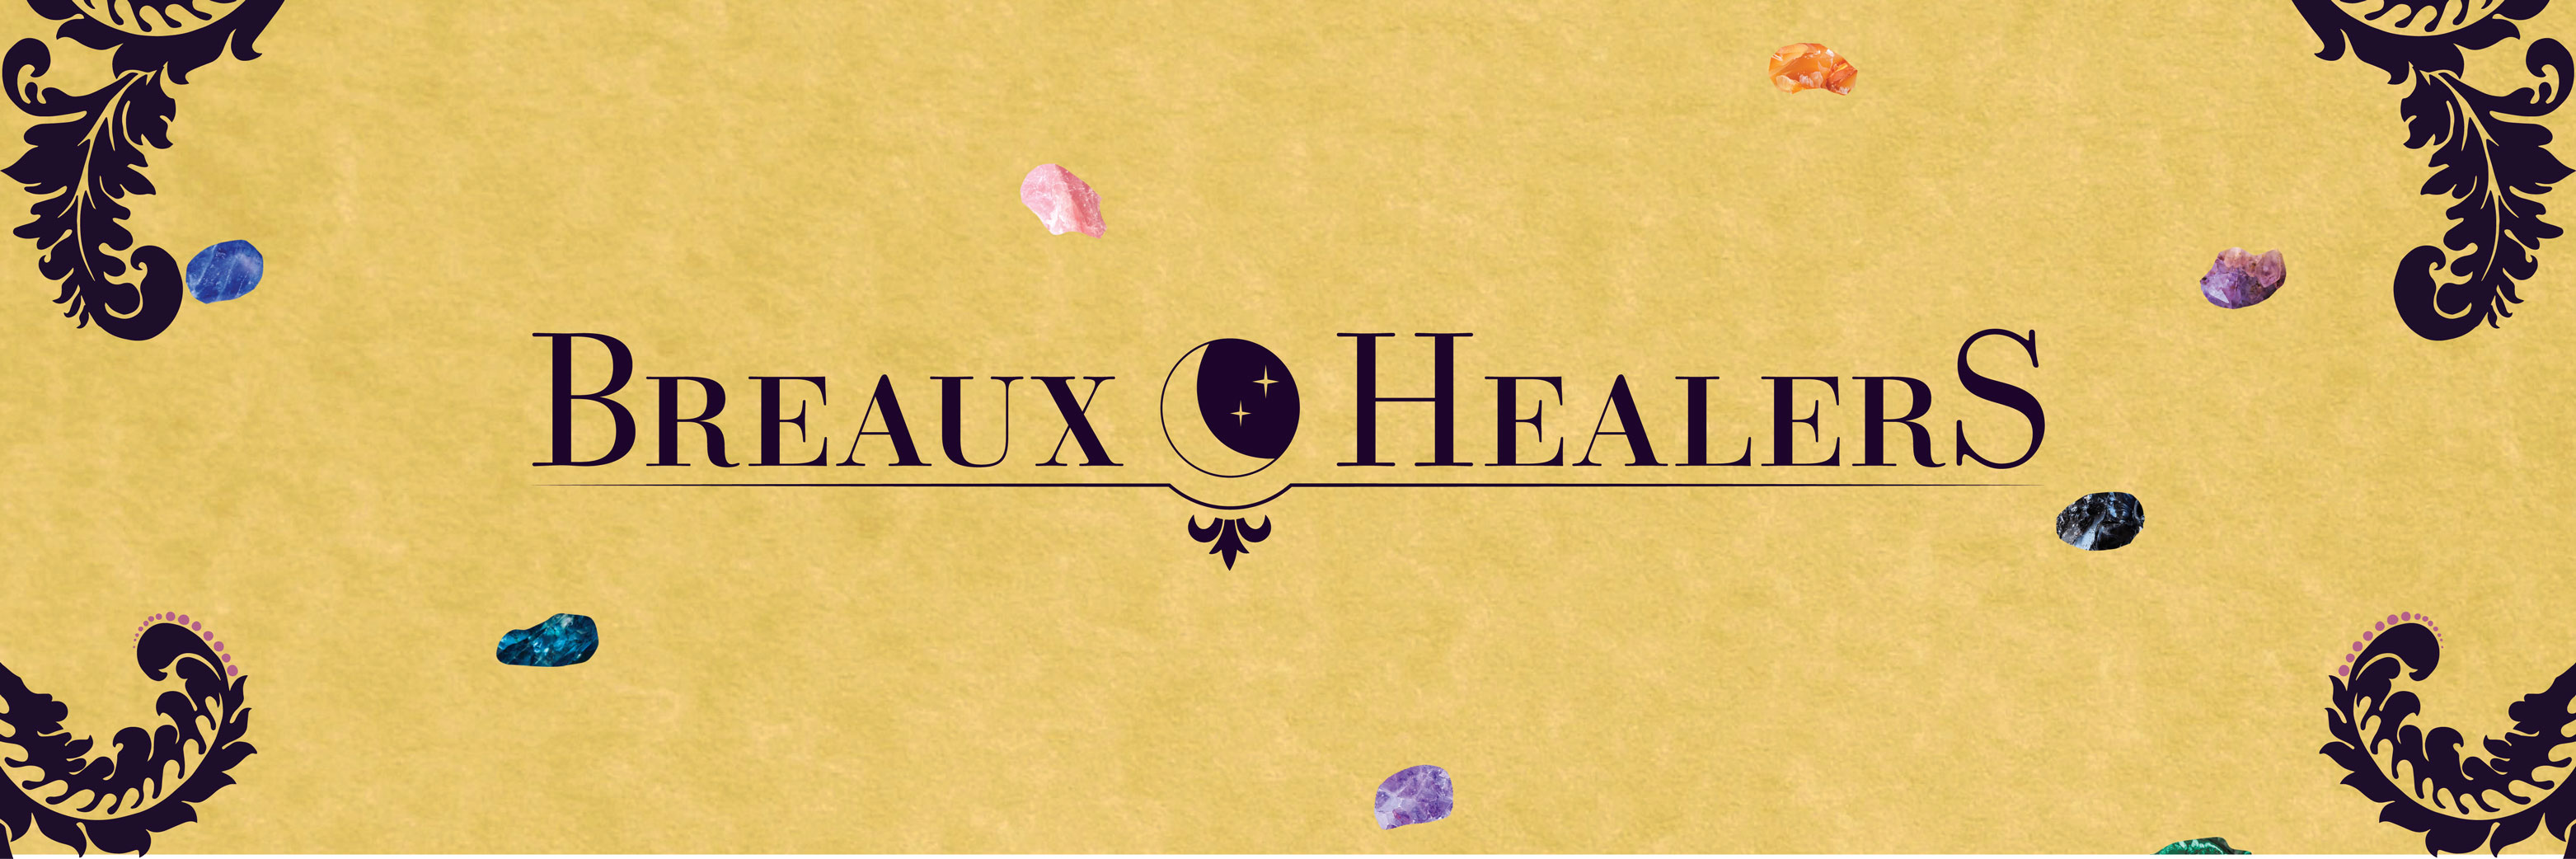 Breaux Healers social media icon